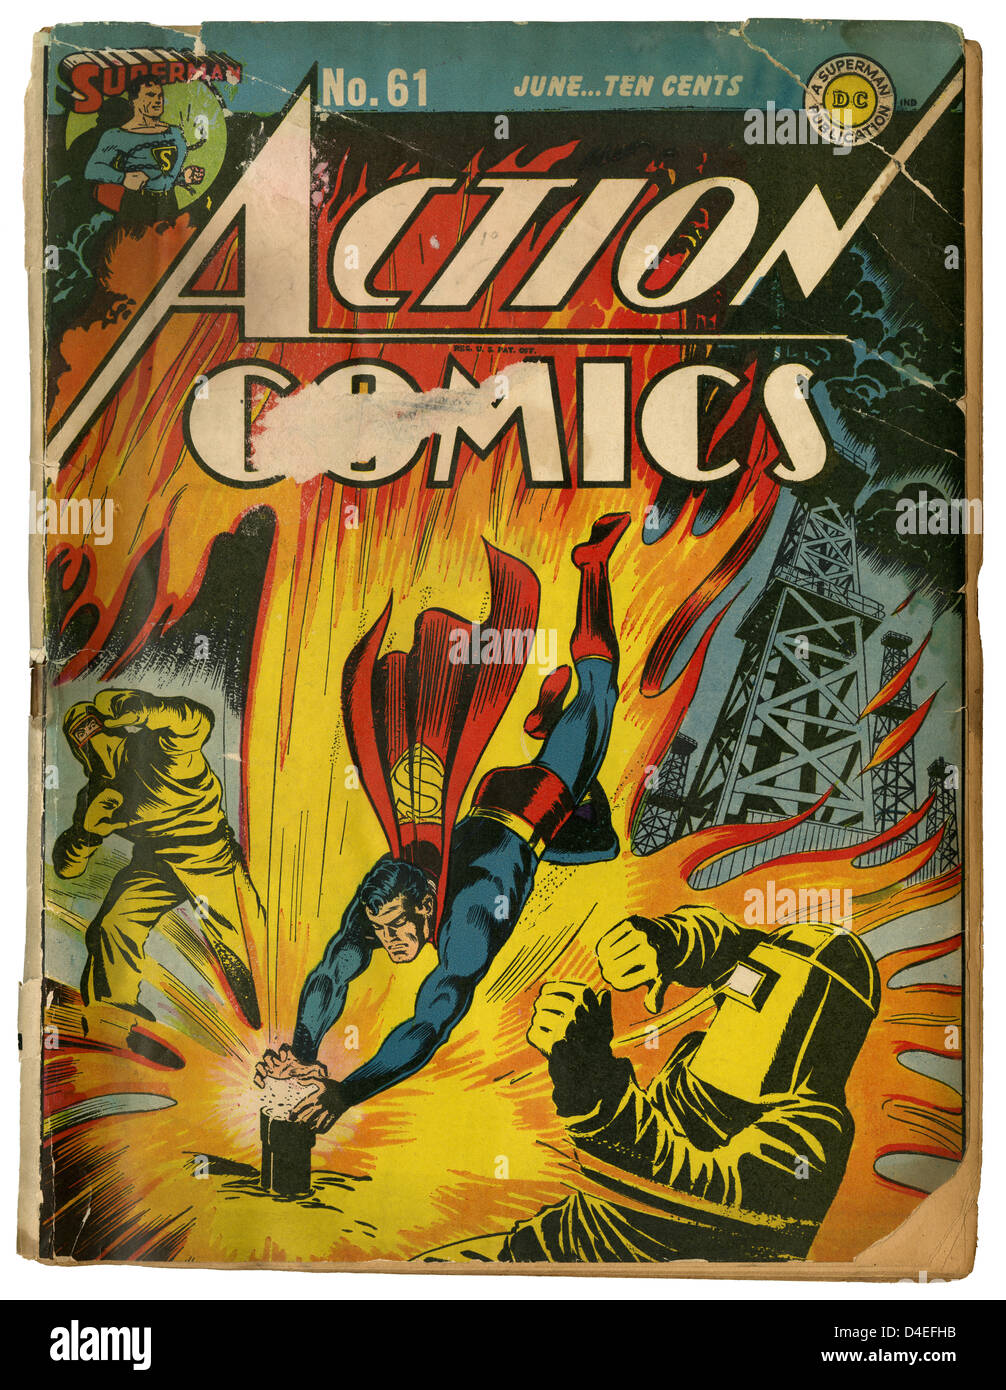 Eine beliebte Kopie von Action Comics #61 mit Superman, ab Juni 1943. Herausgegeben von DC (Detective Comics). Stockfoto